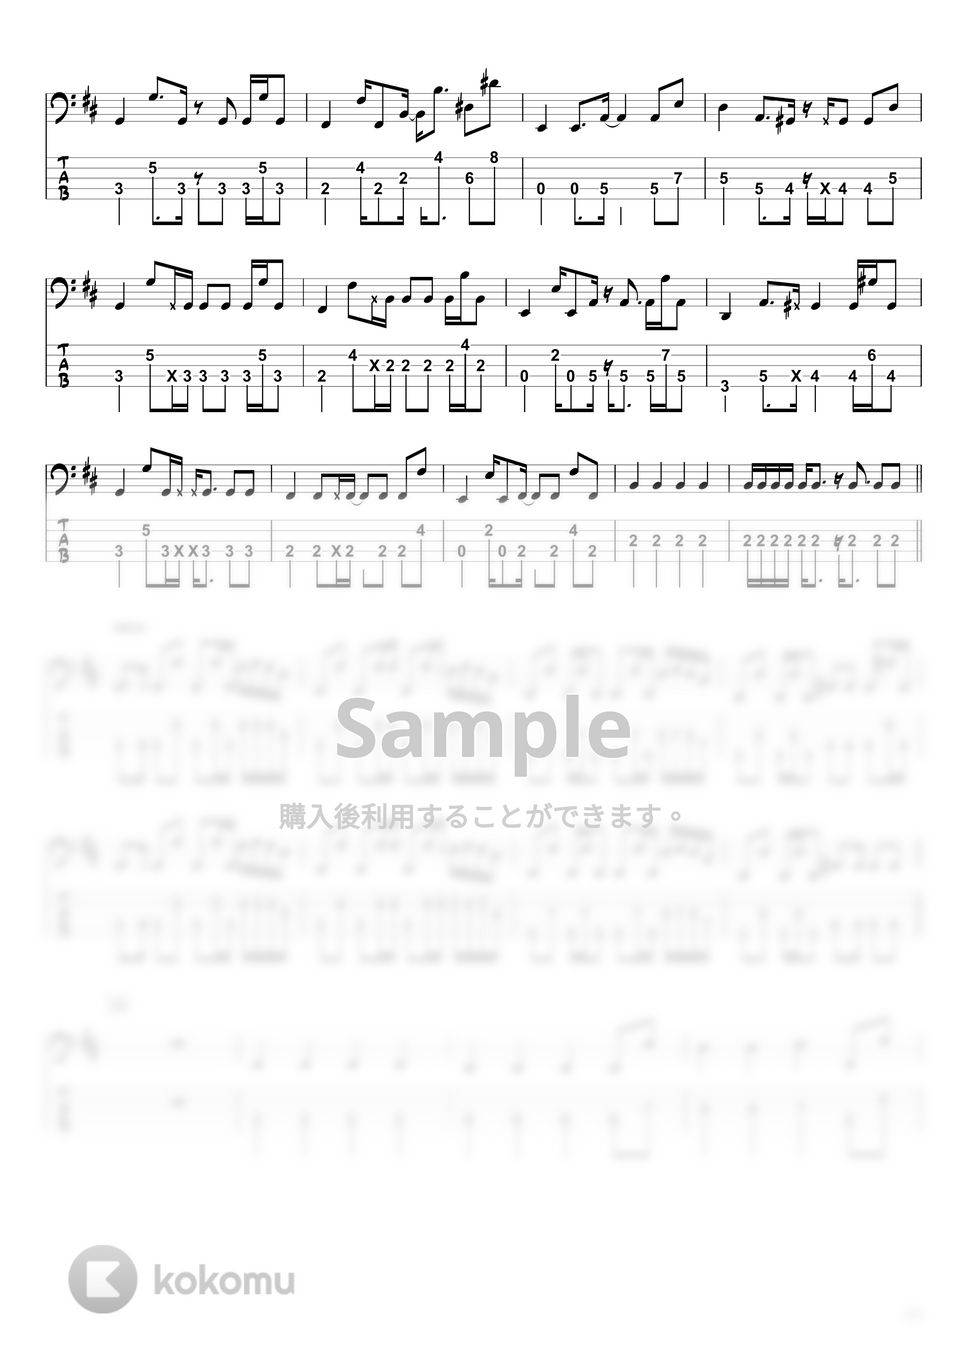 藤井 風 - きらり (ベースTAB譜☆5弦ベース対応) by swbass